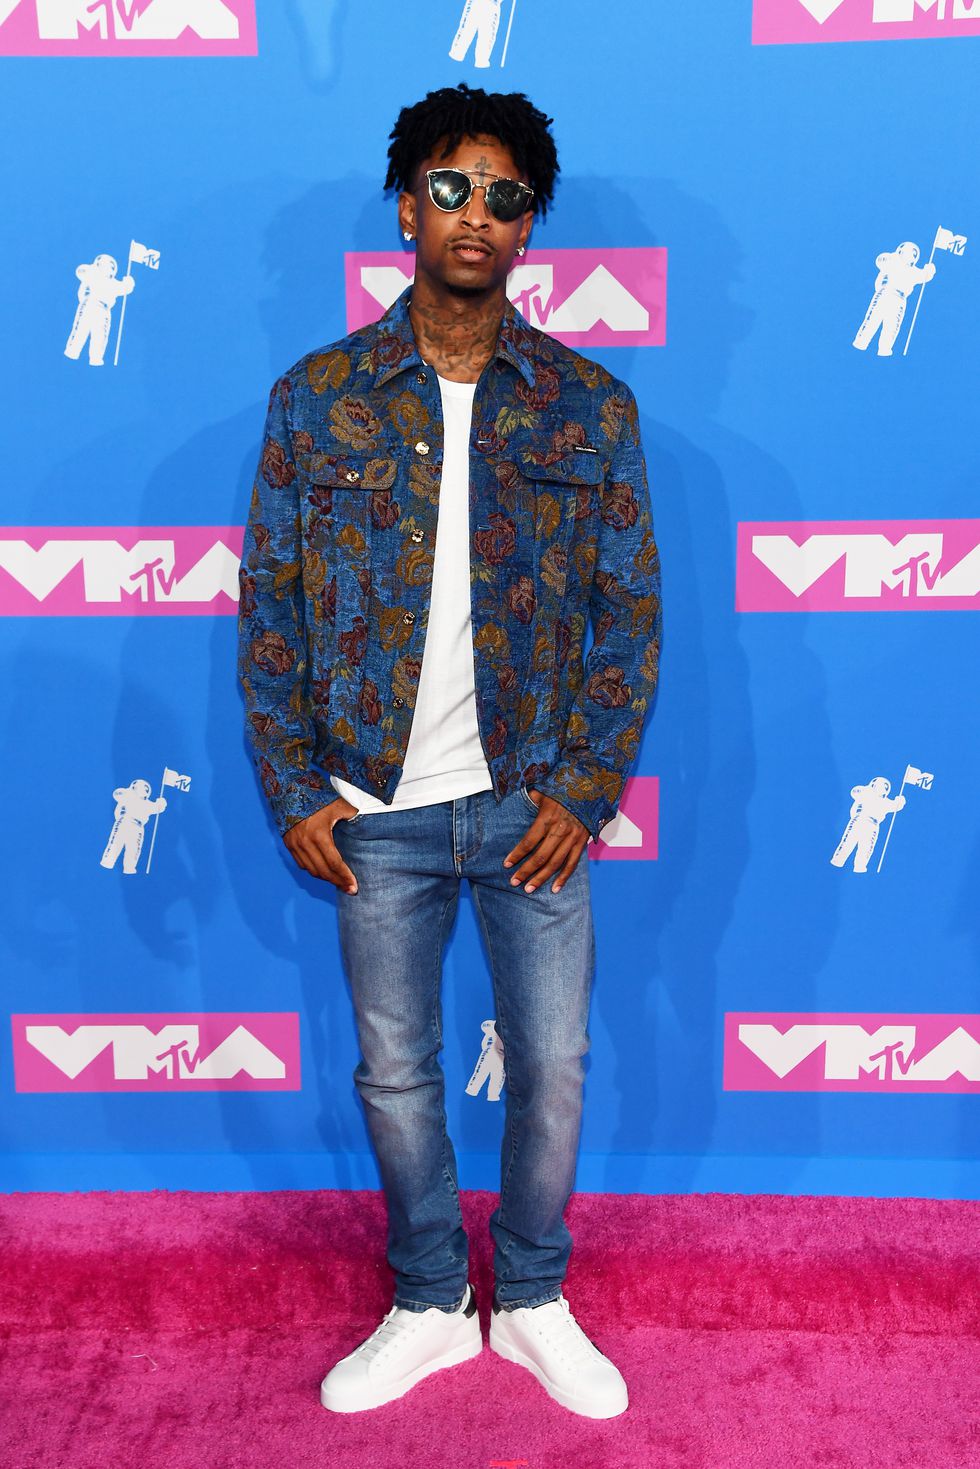 Chàng rapper 21 Savagevới chiếc áo khoác họa tiết nổi bật. Ảnh: ELLE USA